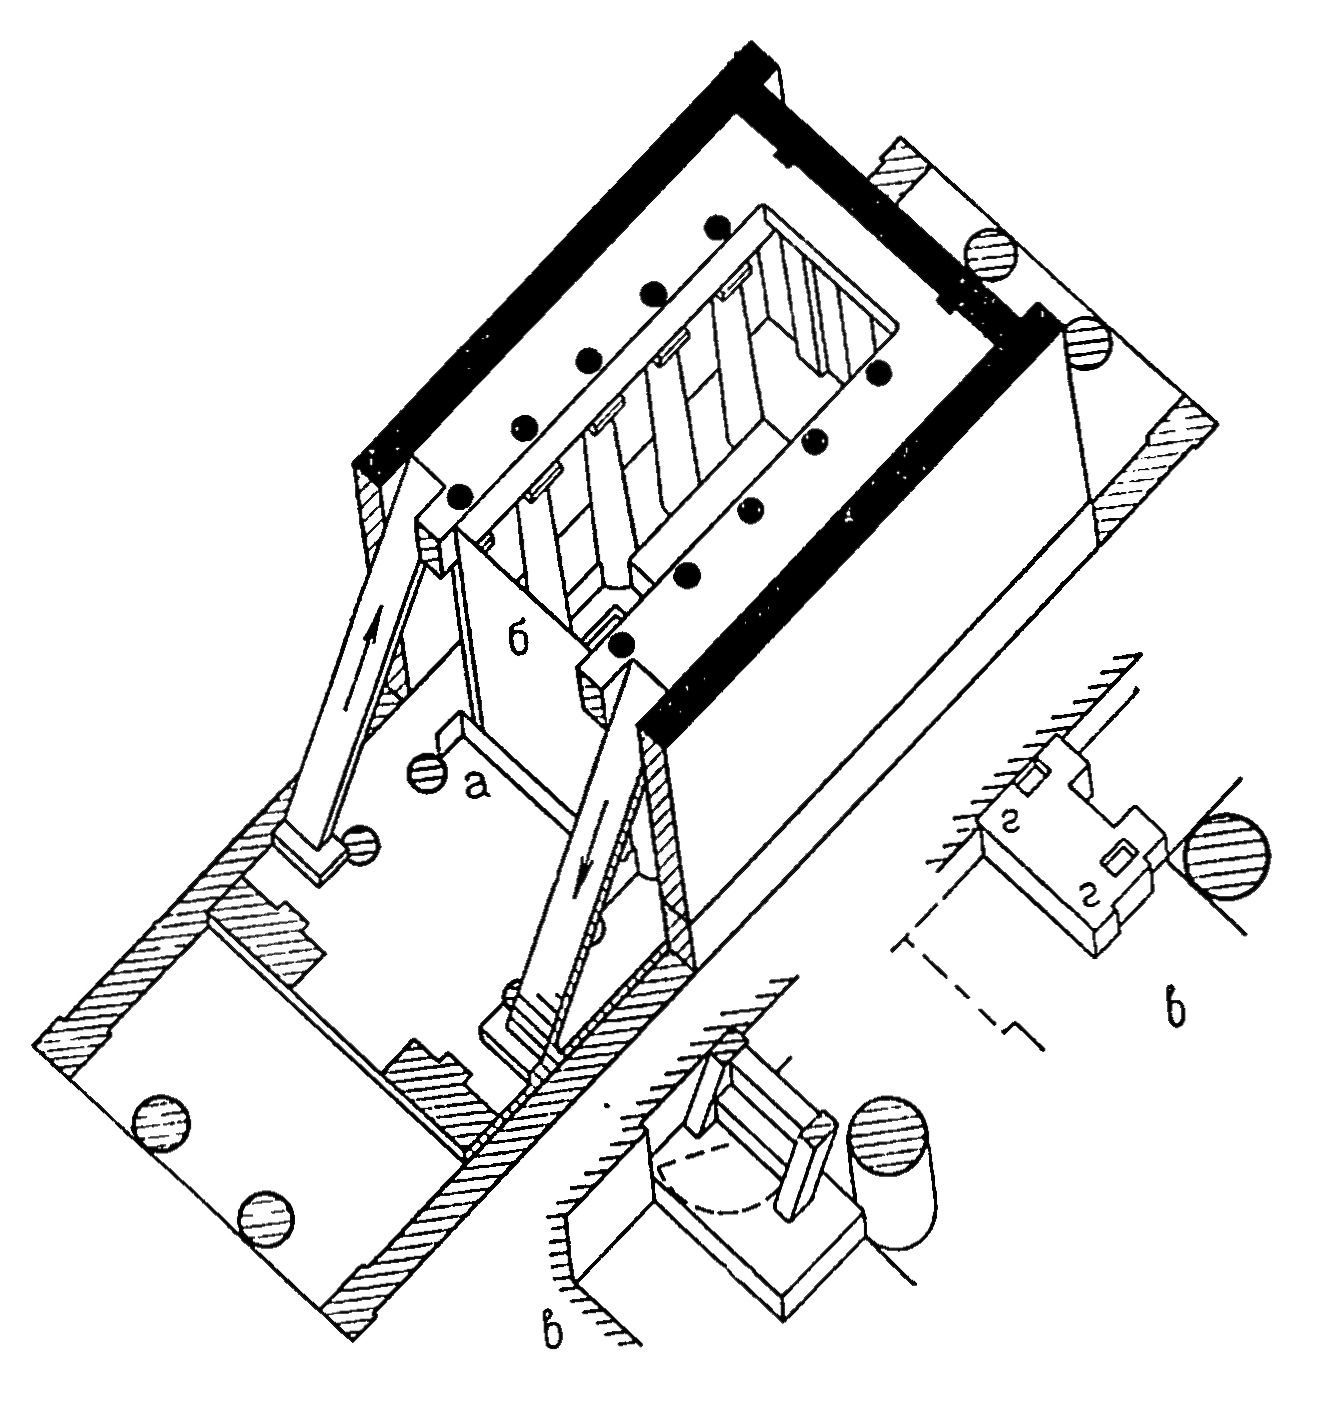 Олимпия. Храм Зевса. Схема внутреннего устройства целлы с галереями и лестницами на них